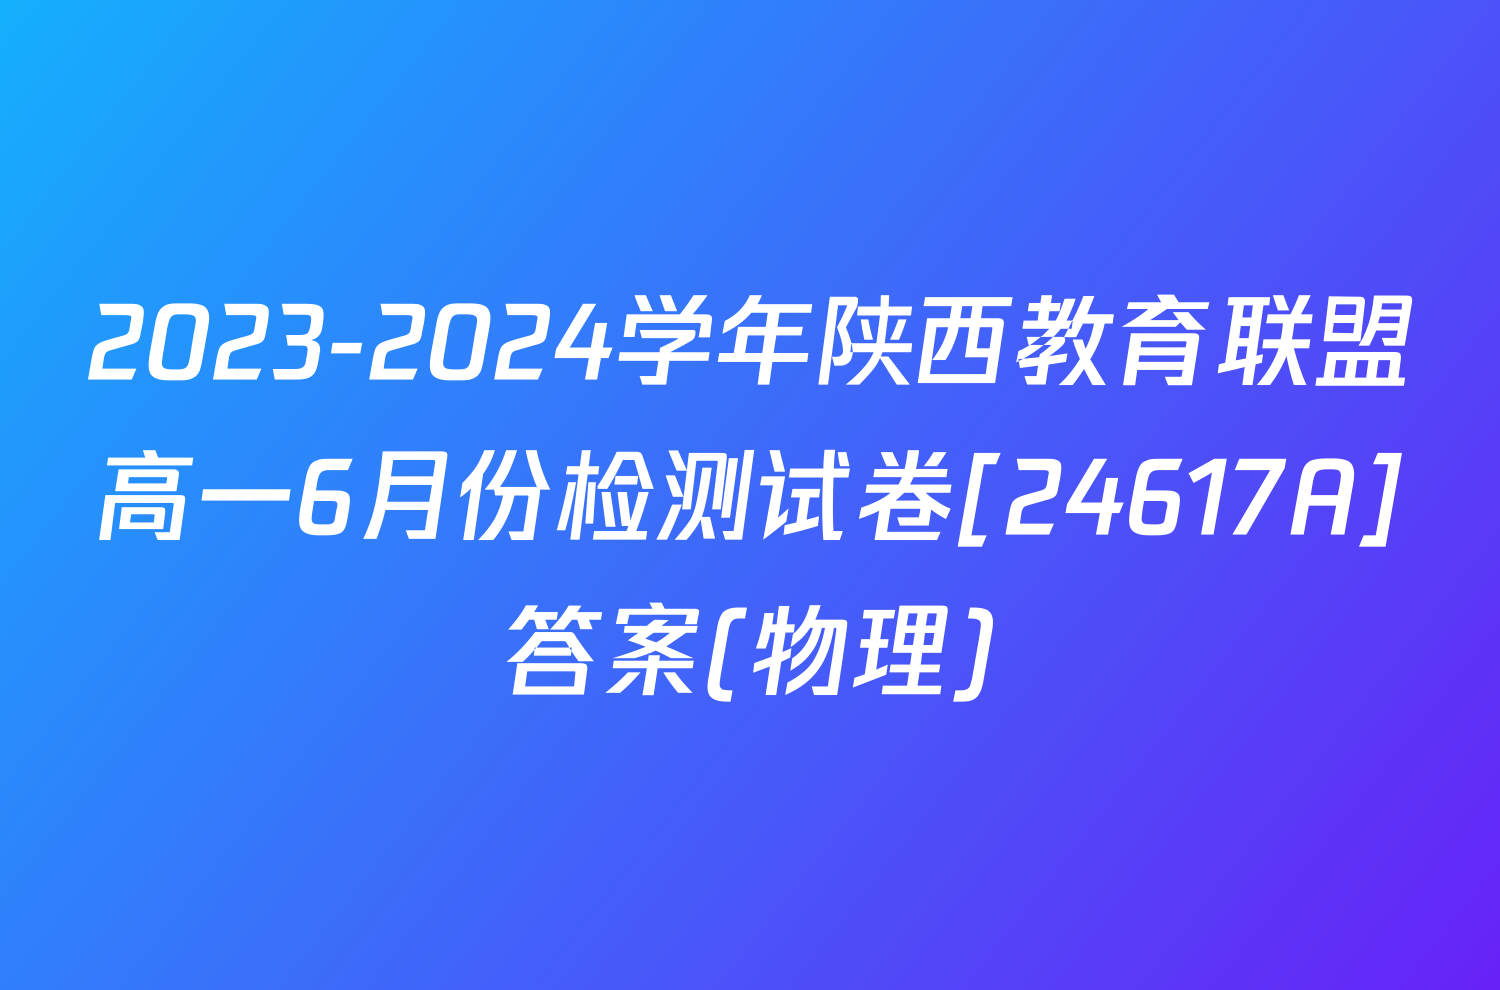 2023-2024学年陕西教育联盟高一6月份检测试卷[24617A]答案(物理)